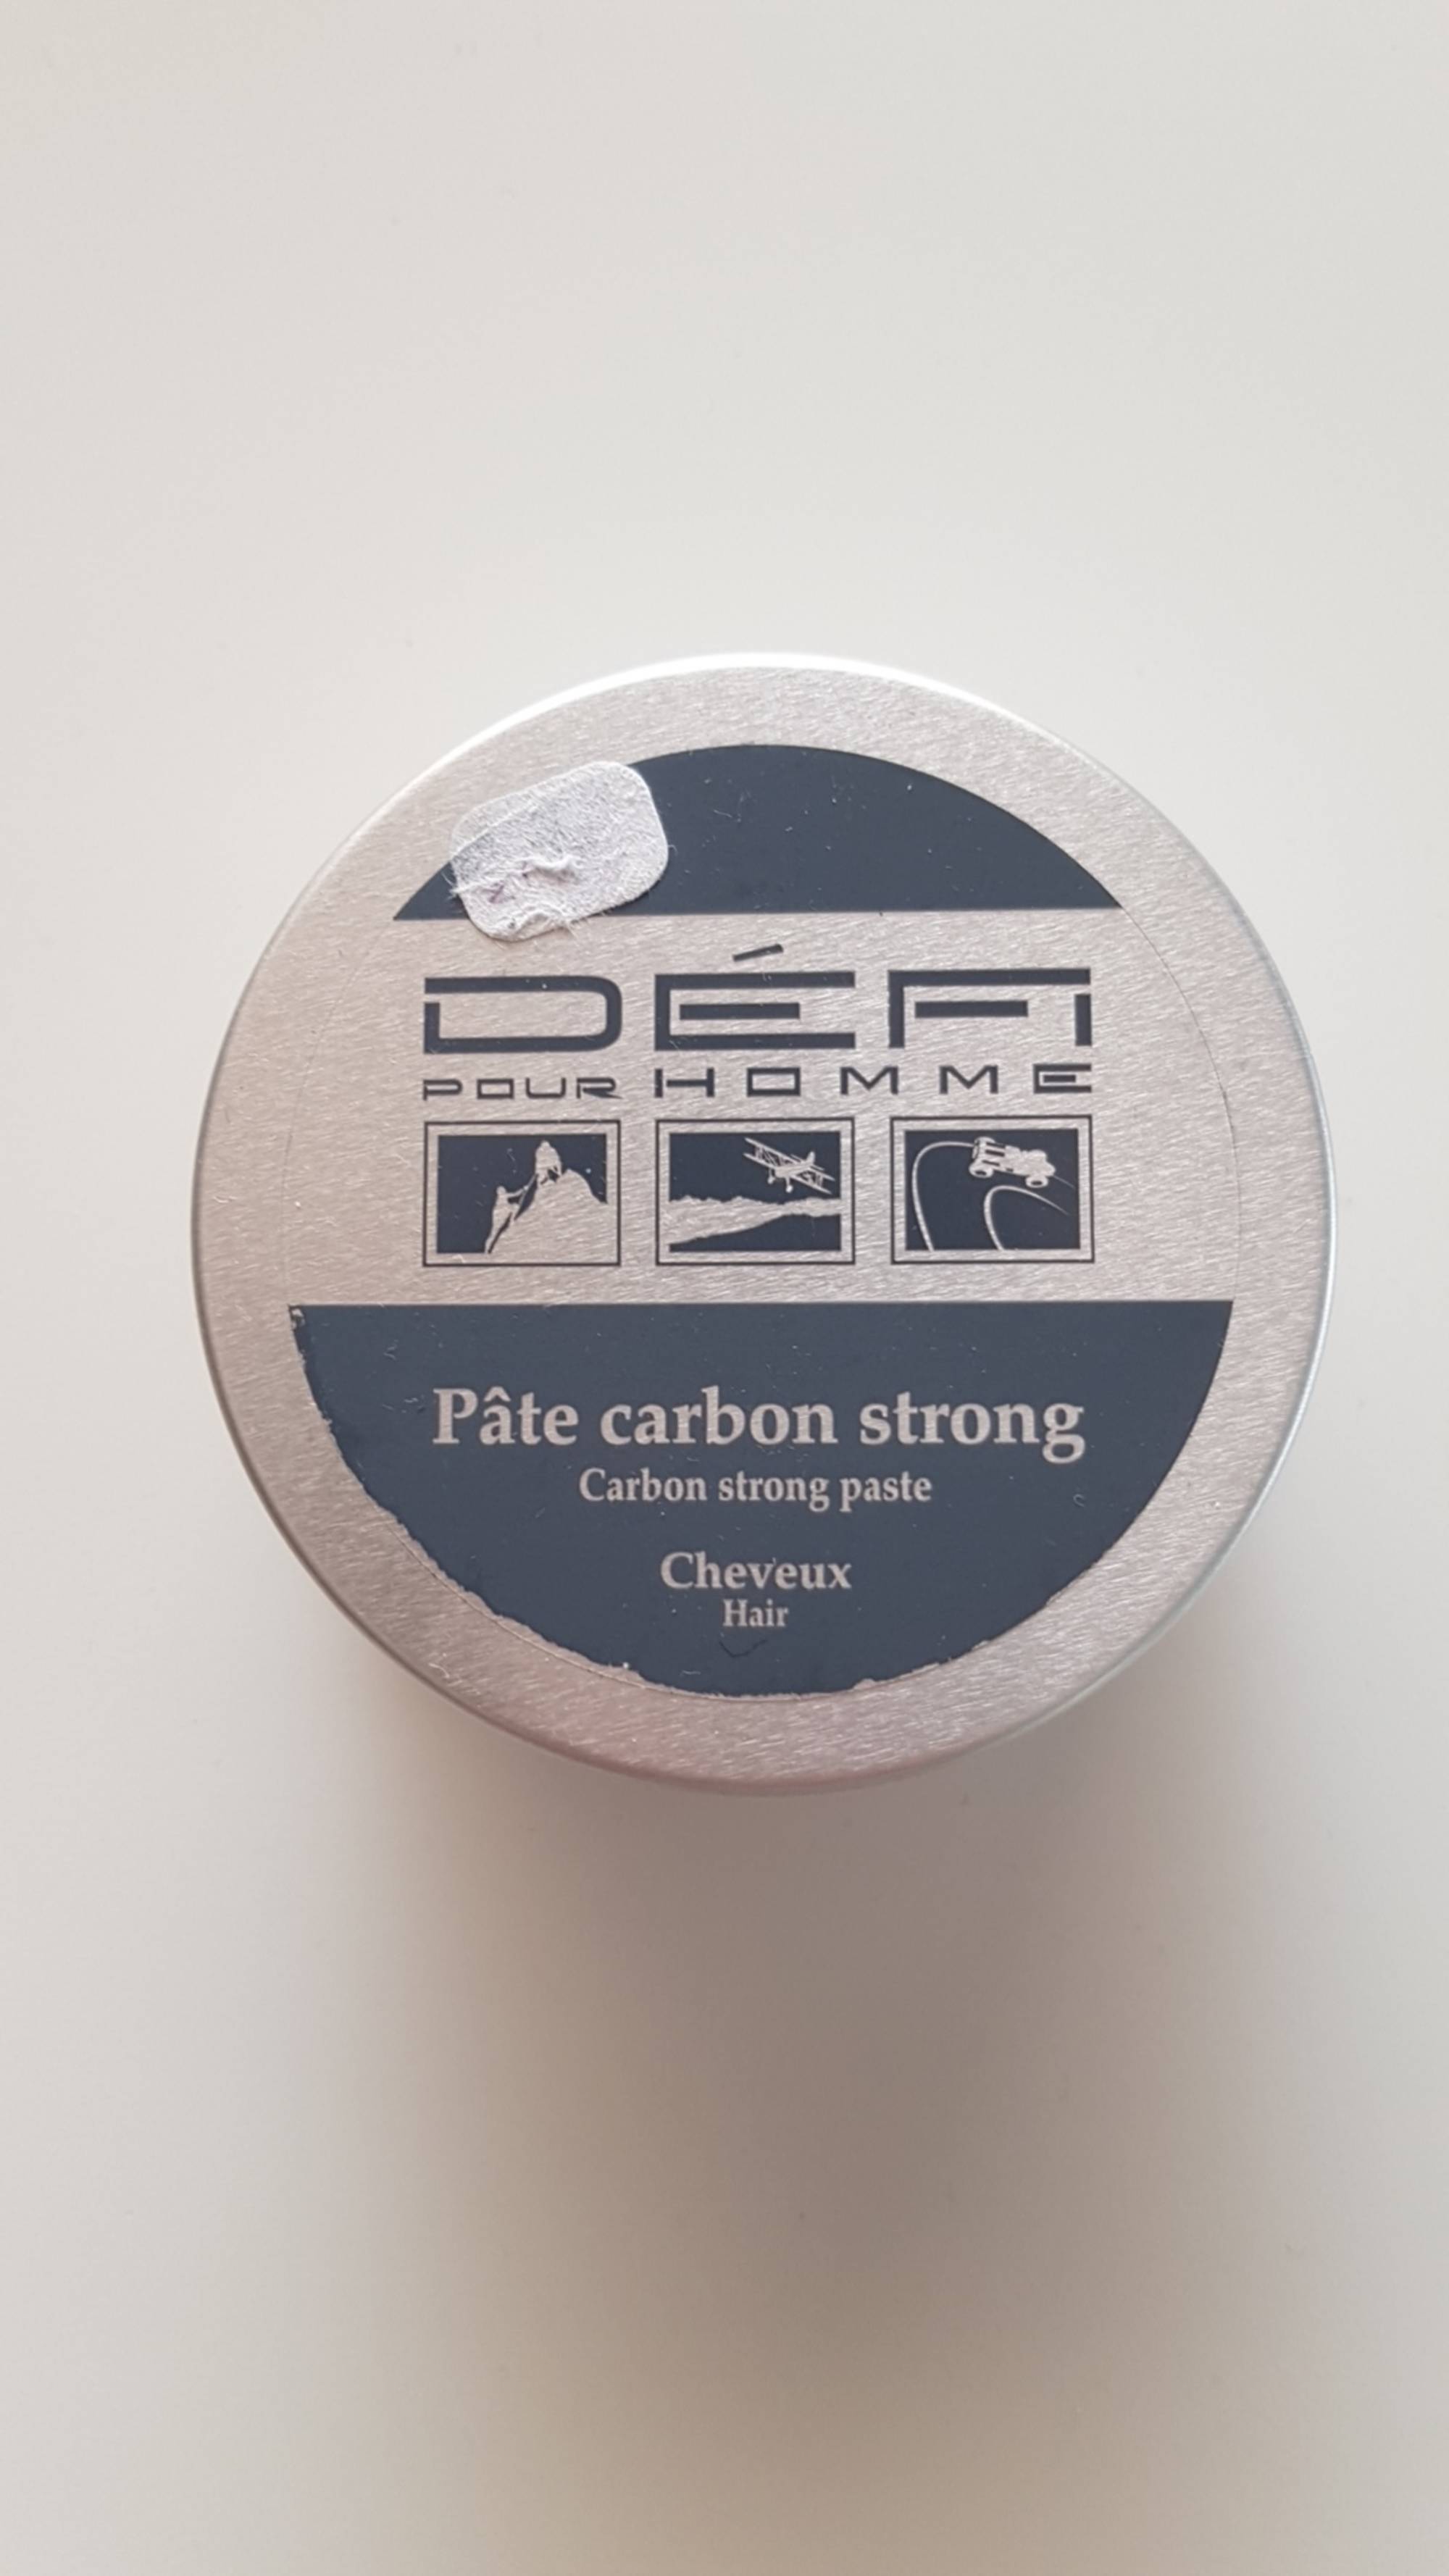 DÉFI POUR HOMME - Pâte carbon strong cheveux